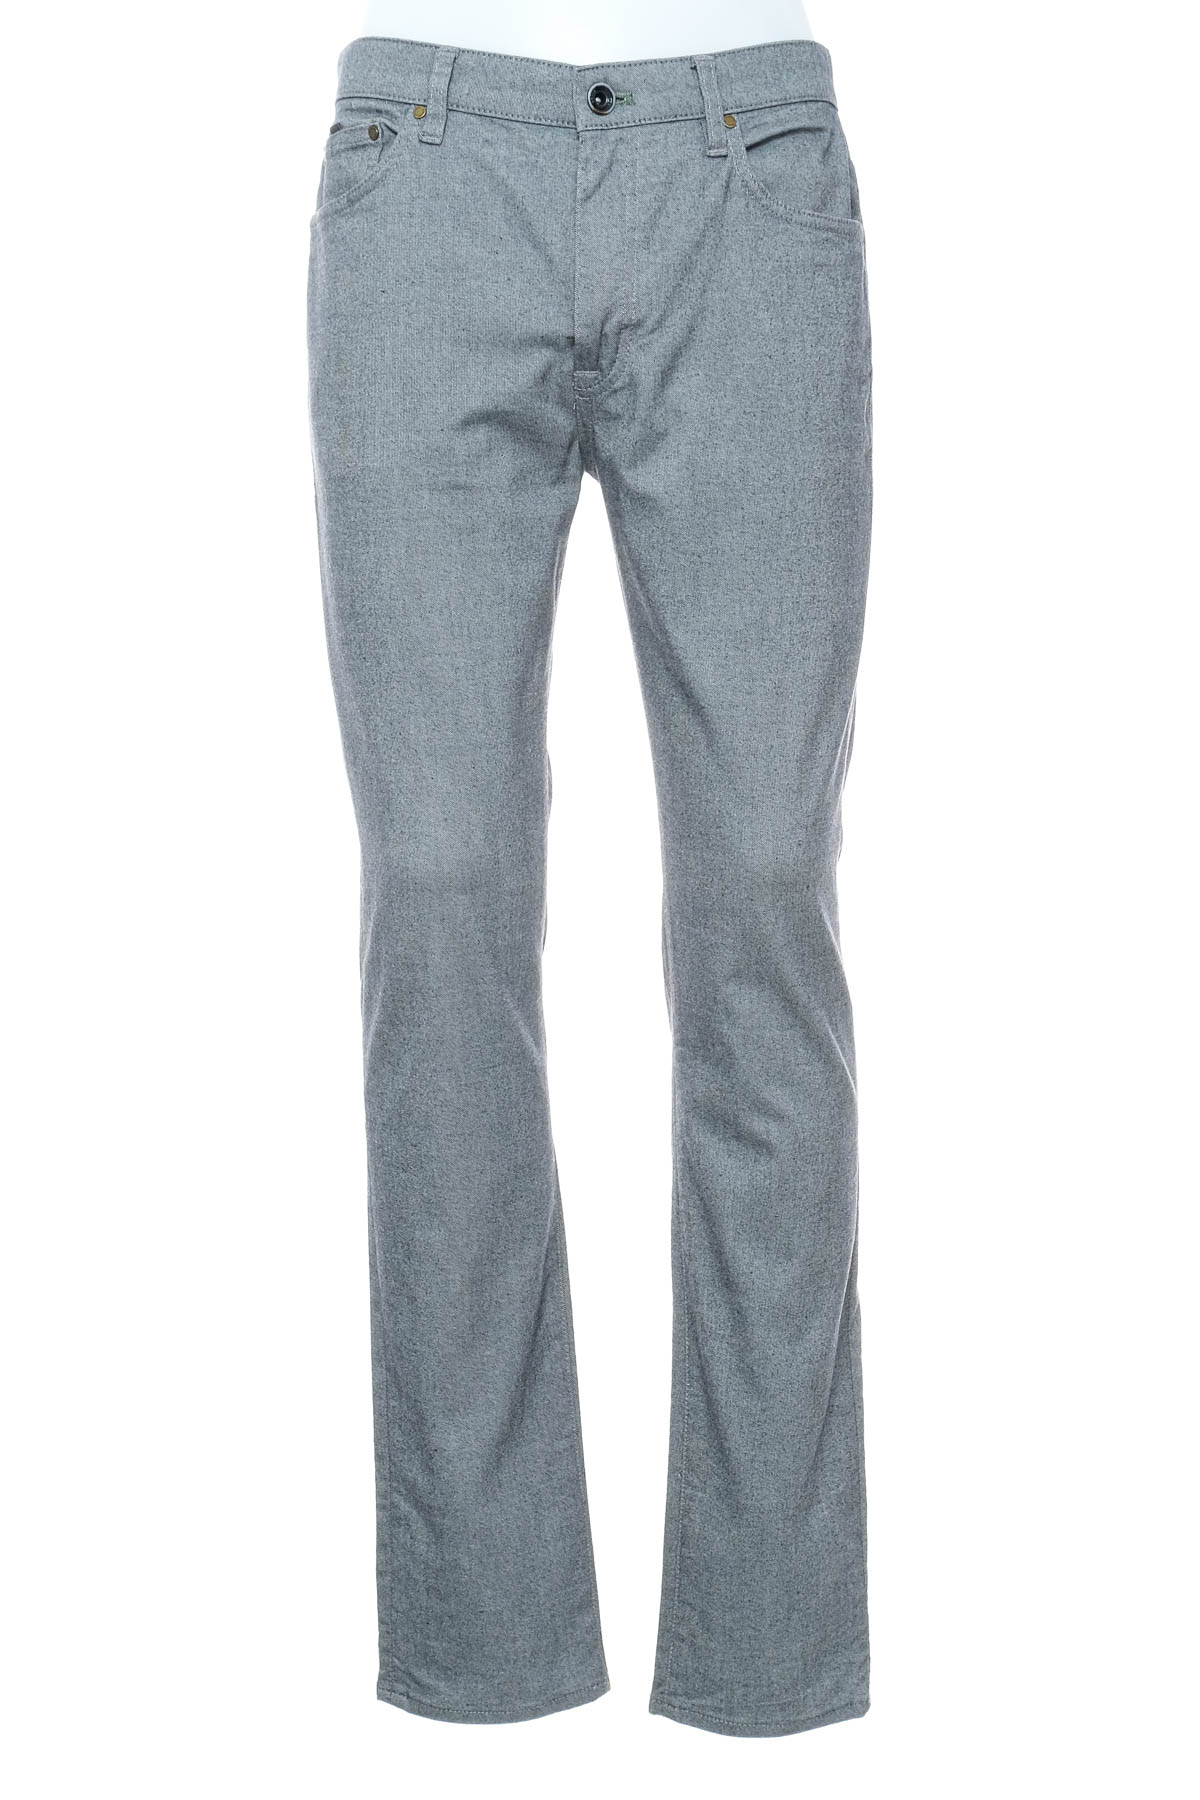 Men's trousers - TED BAKER - 0